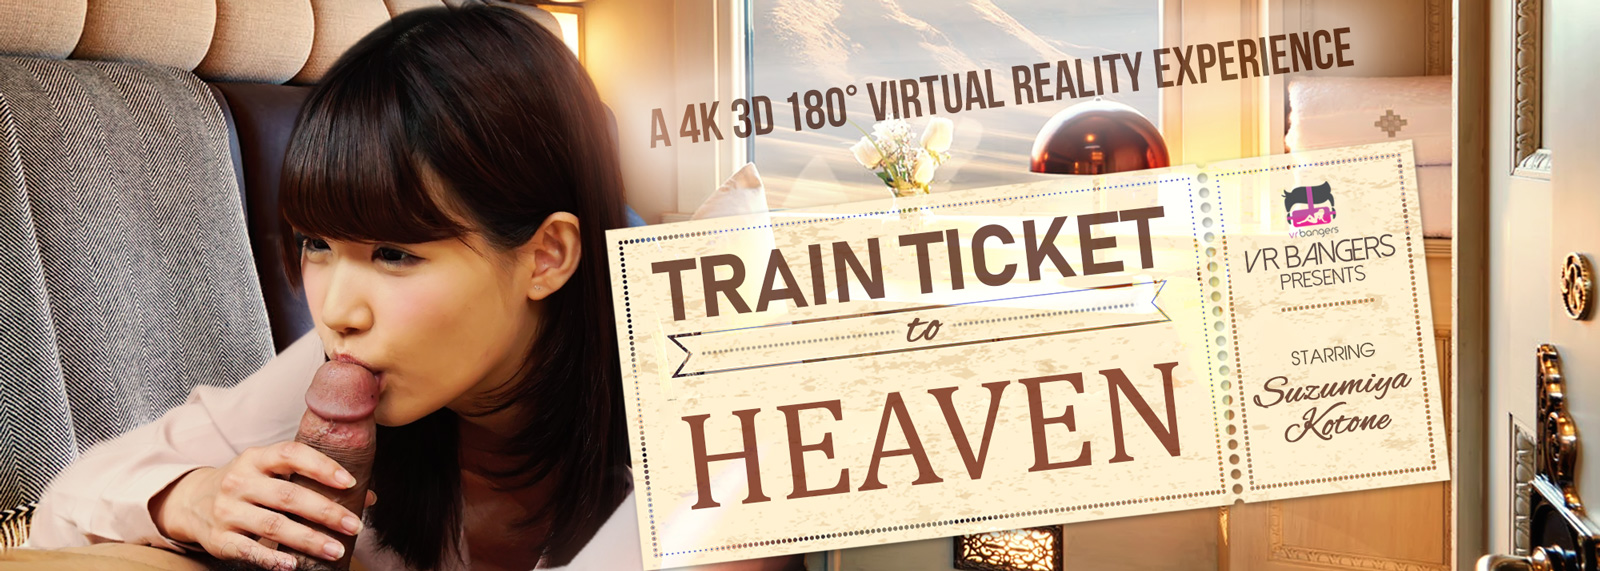 Train Ticket to Heaven with Suzumiya Kotone  Slideshow